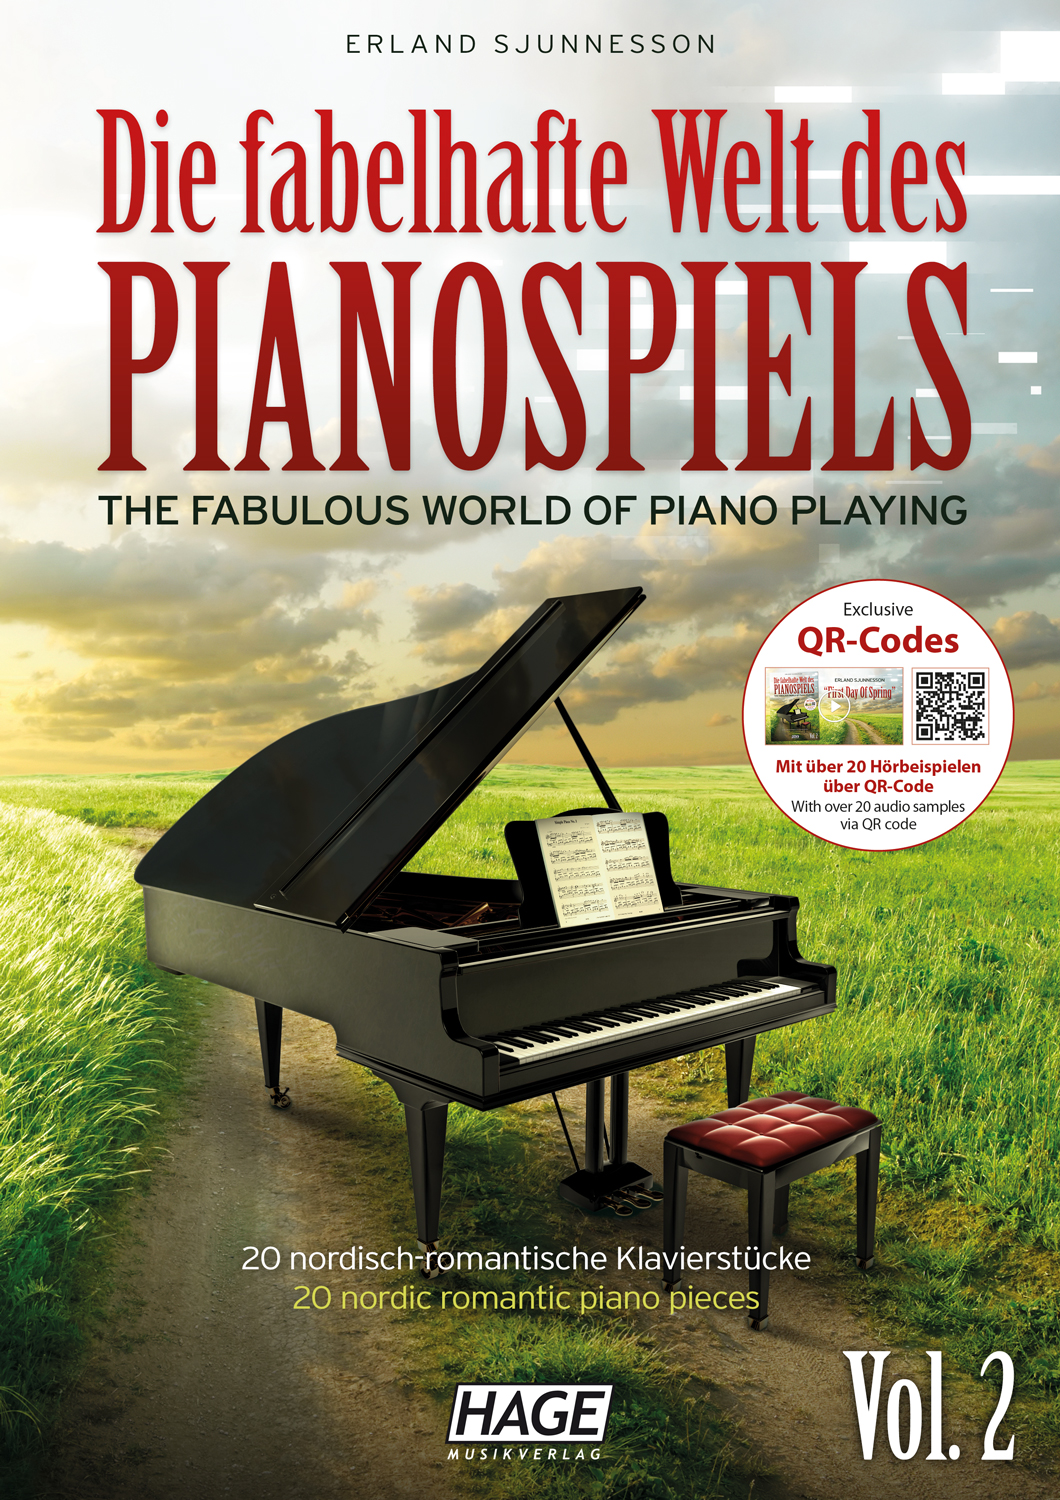 Die fabelhafte Welt des Pianospiels Vol. 2